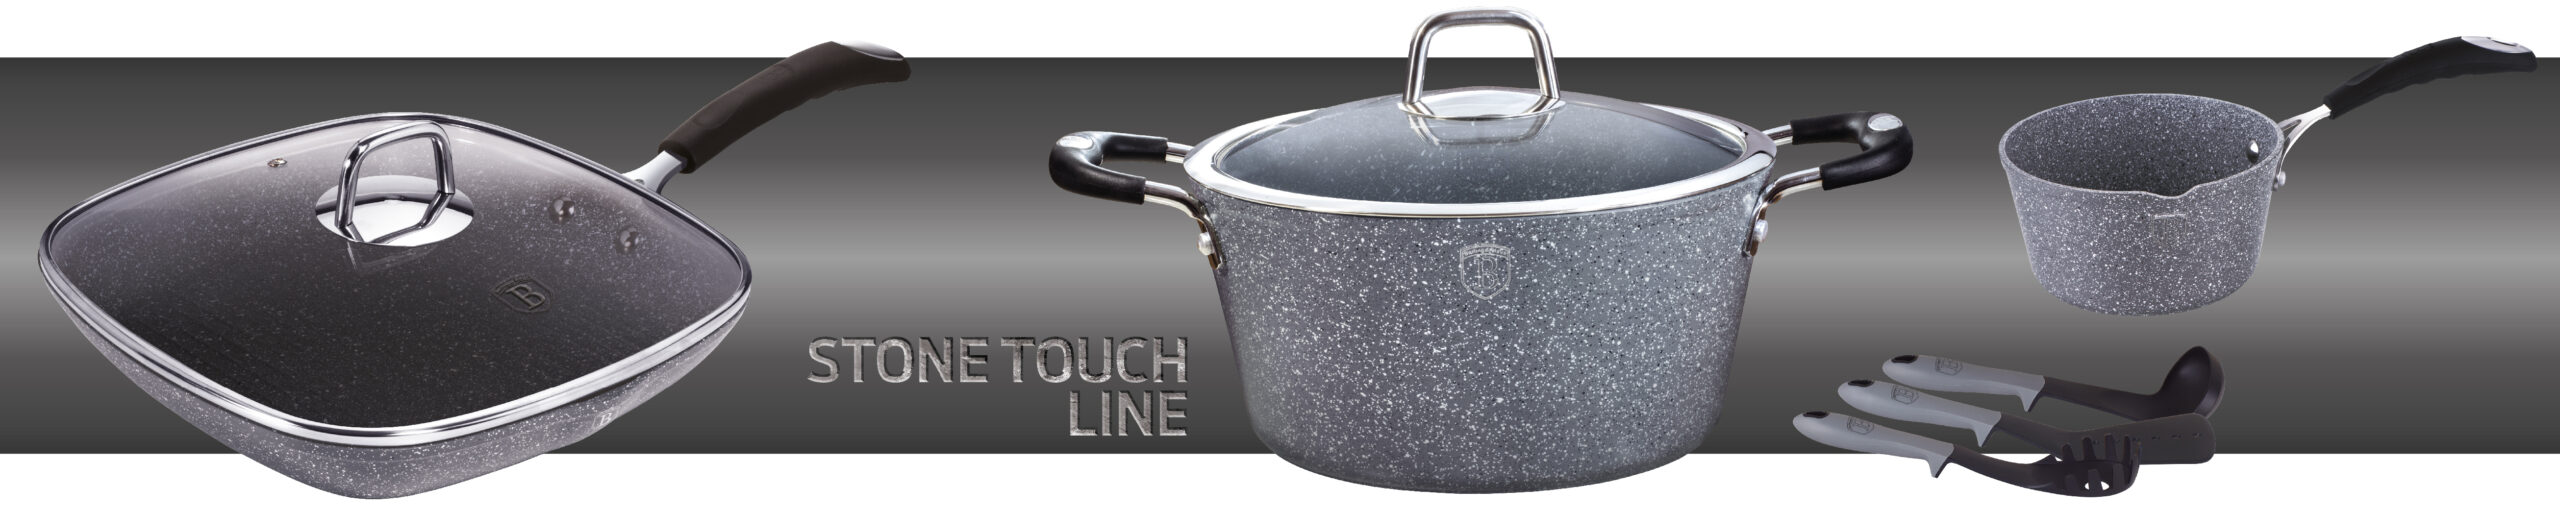 BerlingerHaus Stone Touch Line termék család oldal a főbb konyhai termékekkel